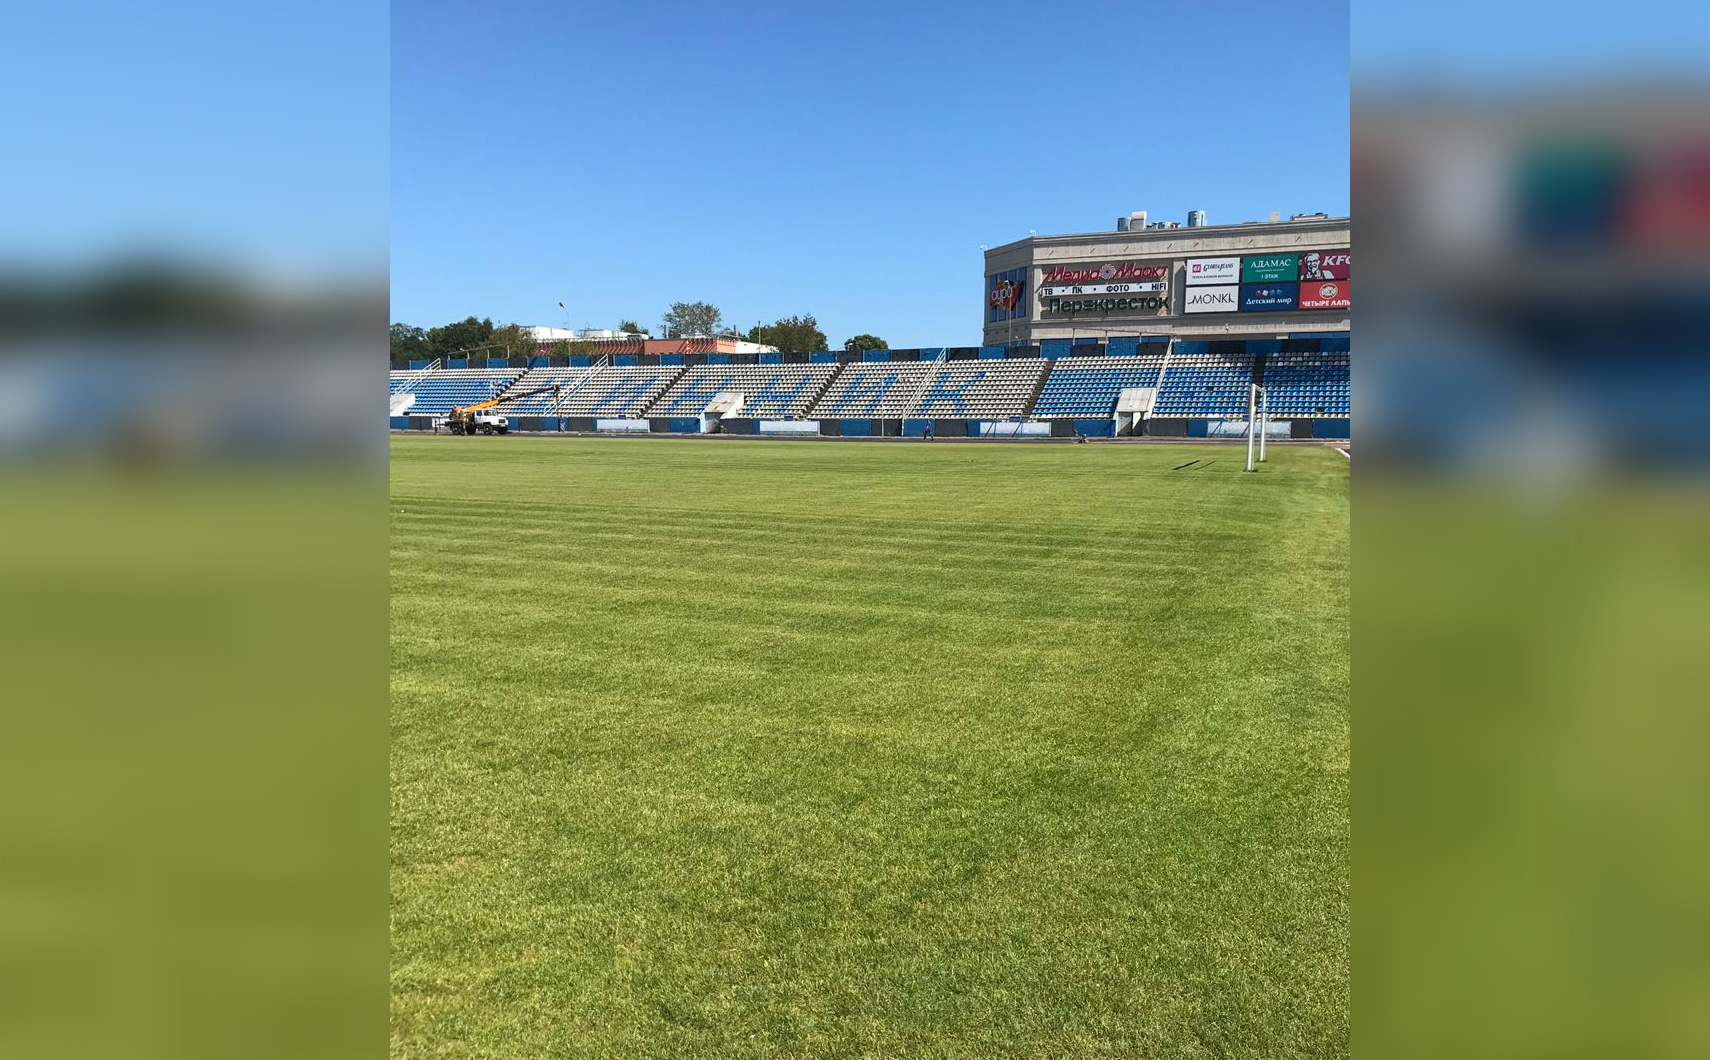 Мэр Ярославля выложил в социальные сети фото основного стадиона «Шинник», показав его состояние на сегодняшний день